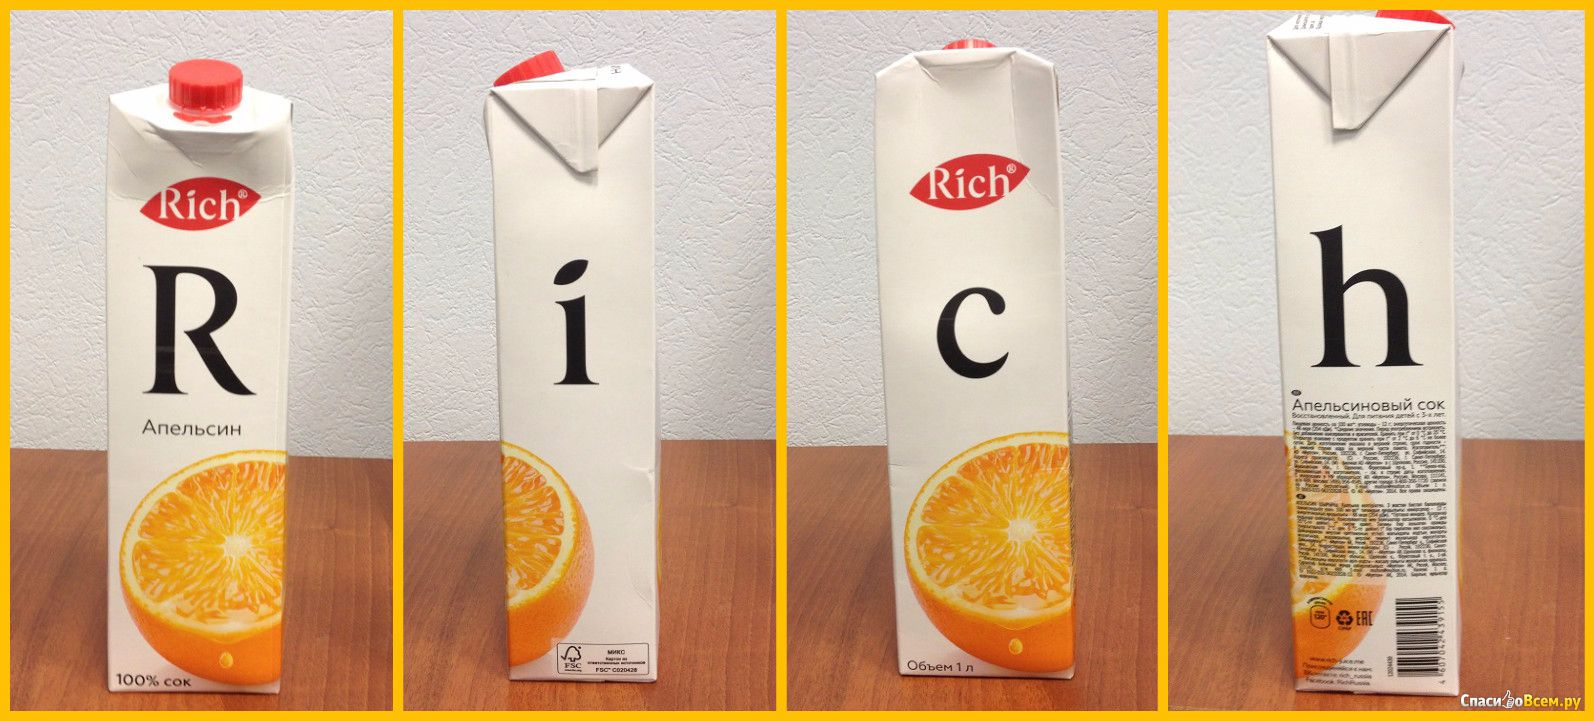 Сок ричи состав. Сок Рич упаковка. Апельсиновый сок Rich. Сок в упаковке. Сок Рич апельсин.